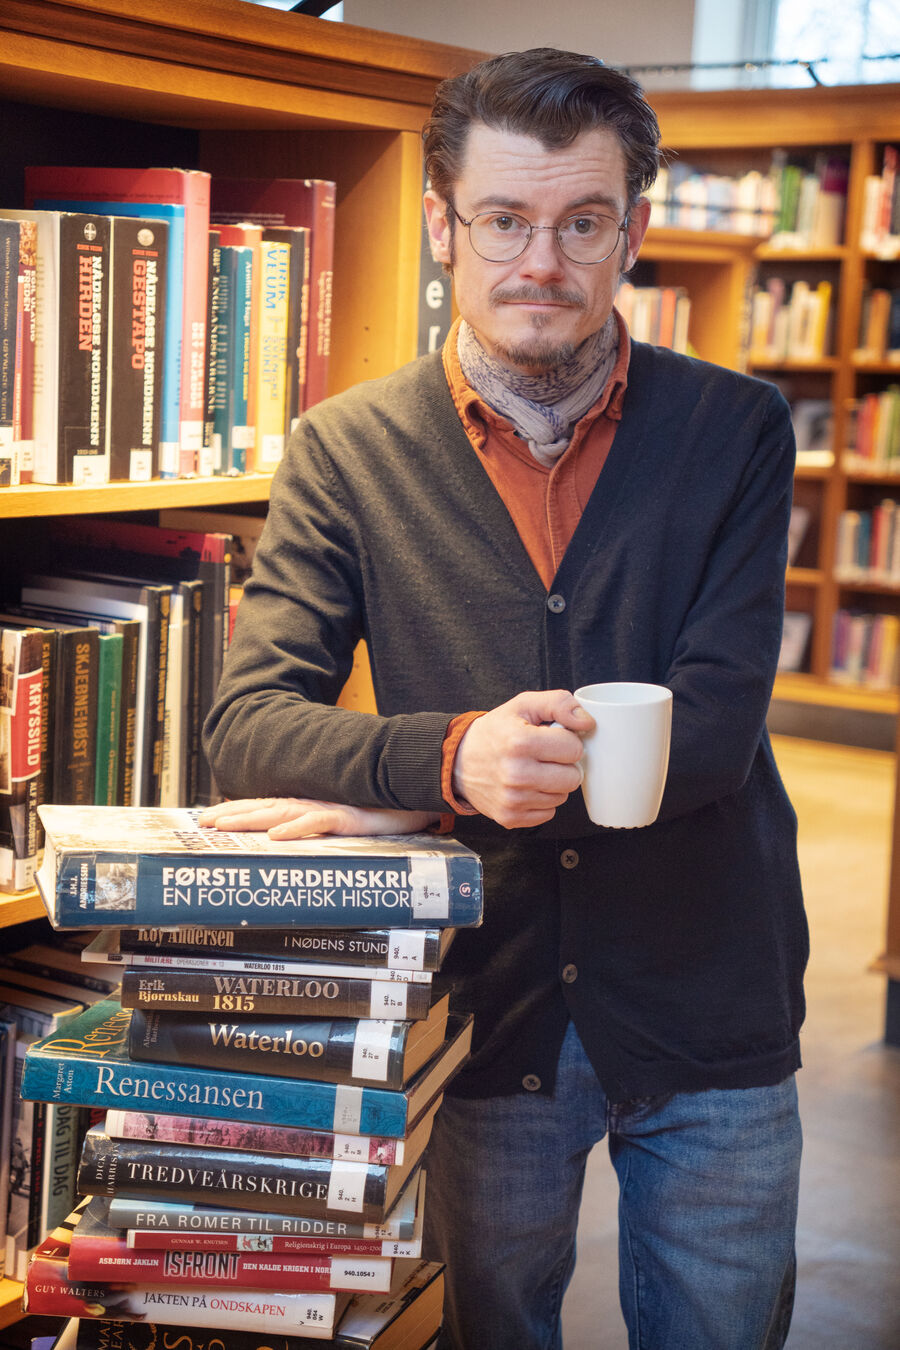 Bilde av bibliotekar Martin som står med kaffekoppen ved siden av en svær stabel med historiebøker